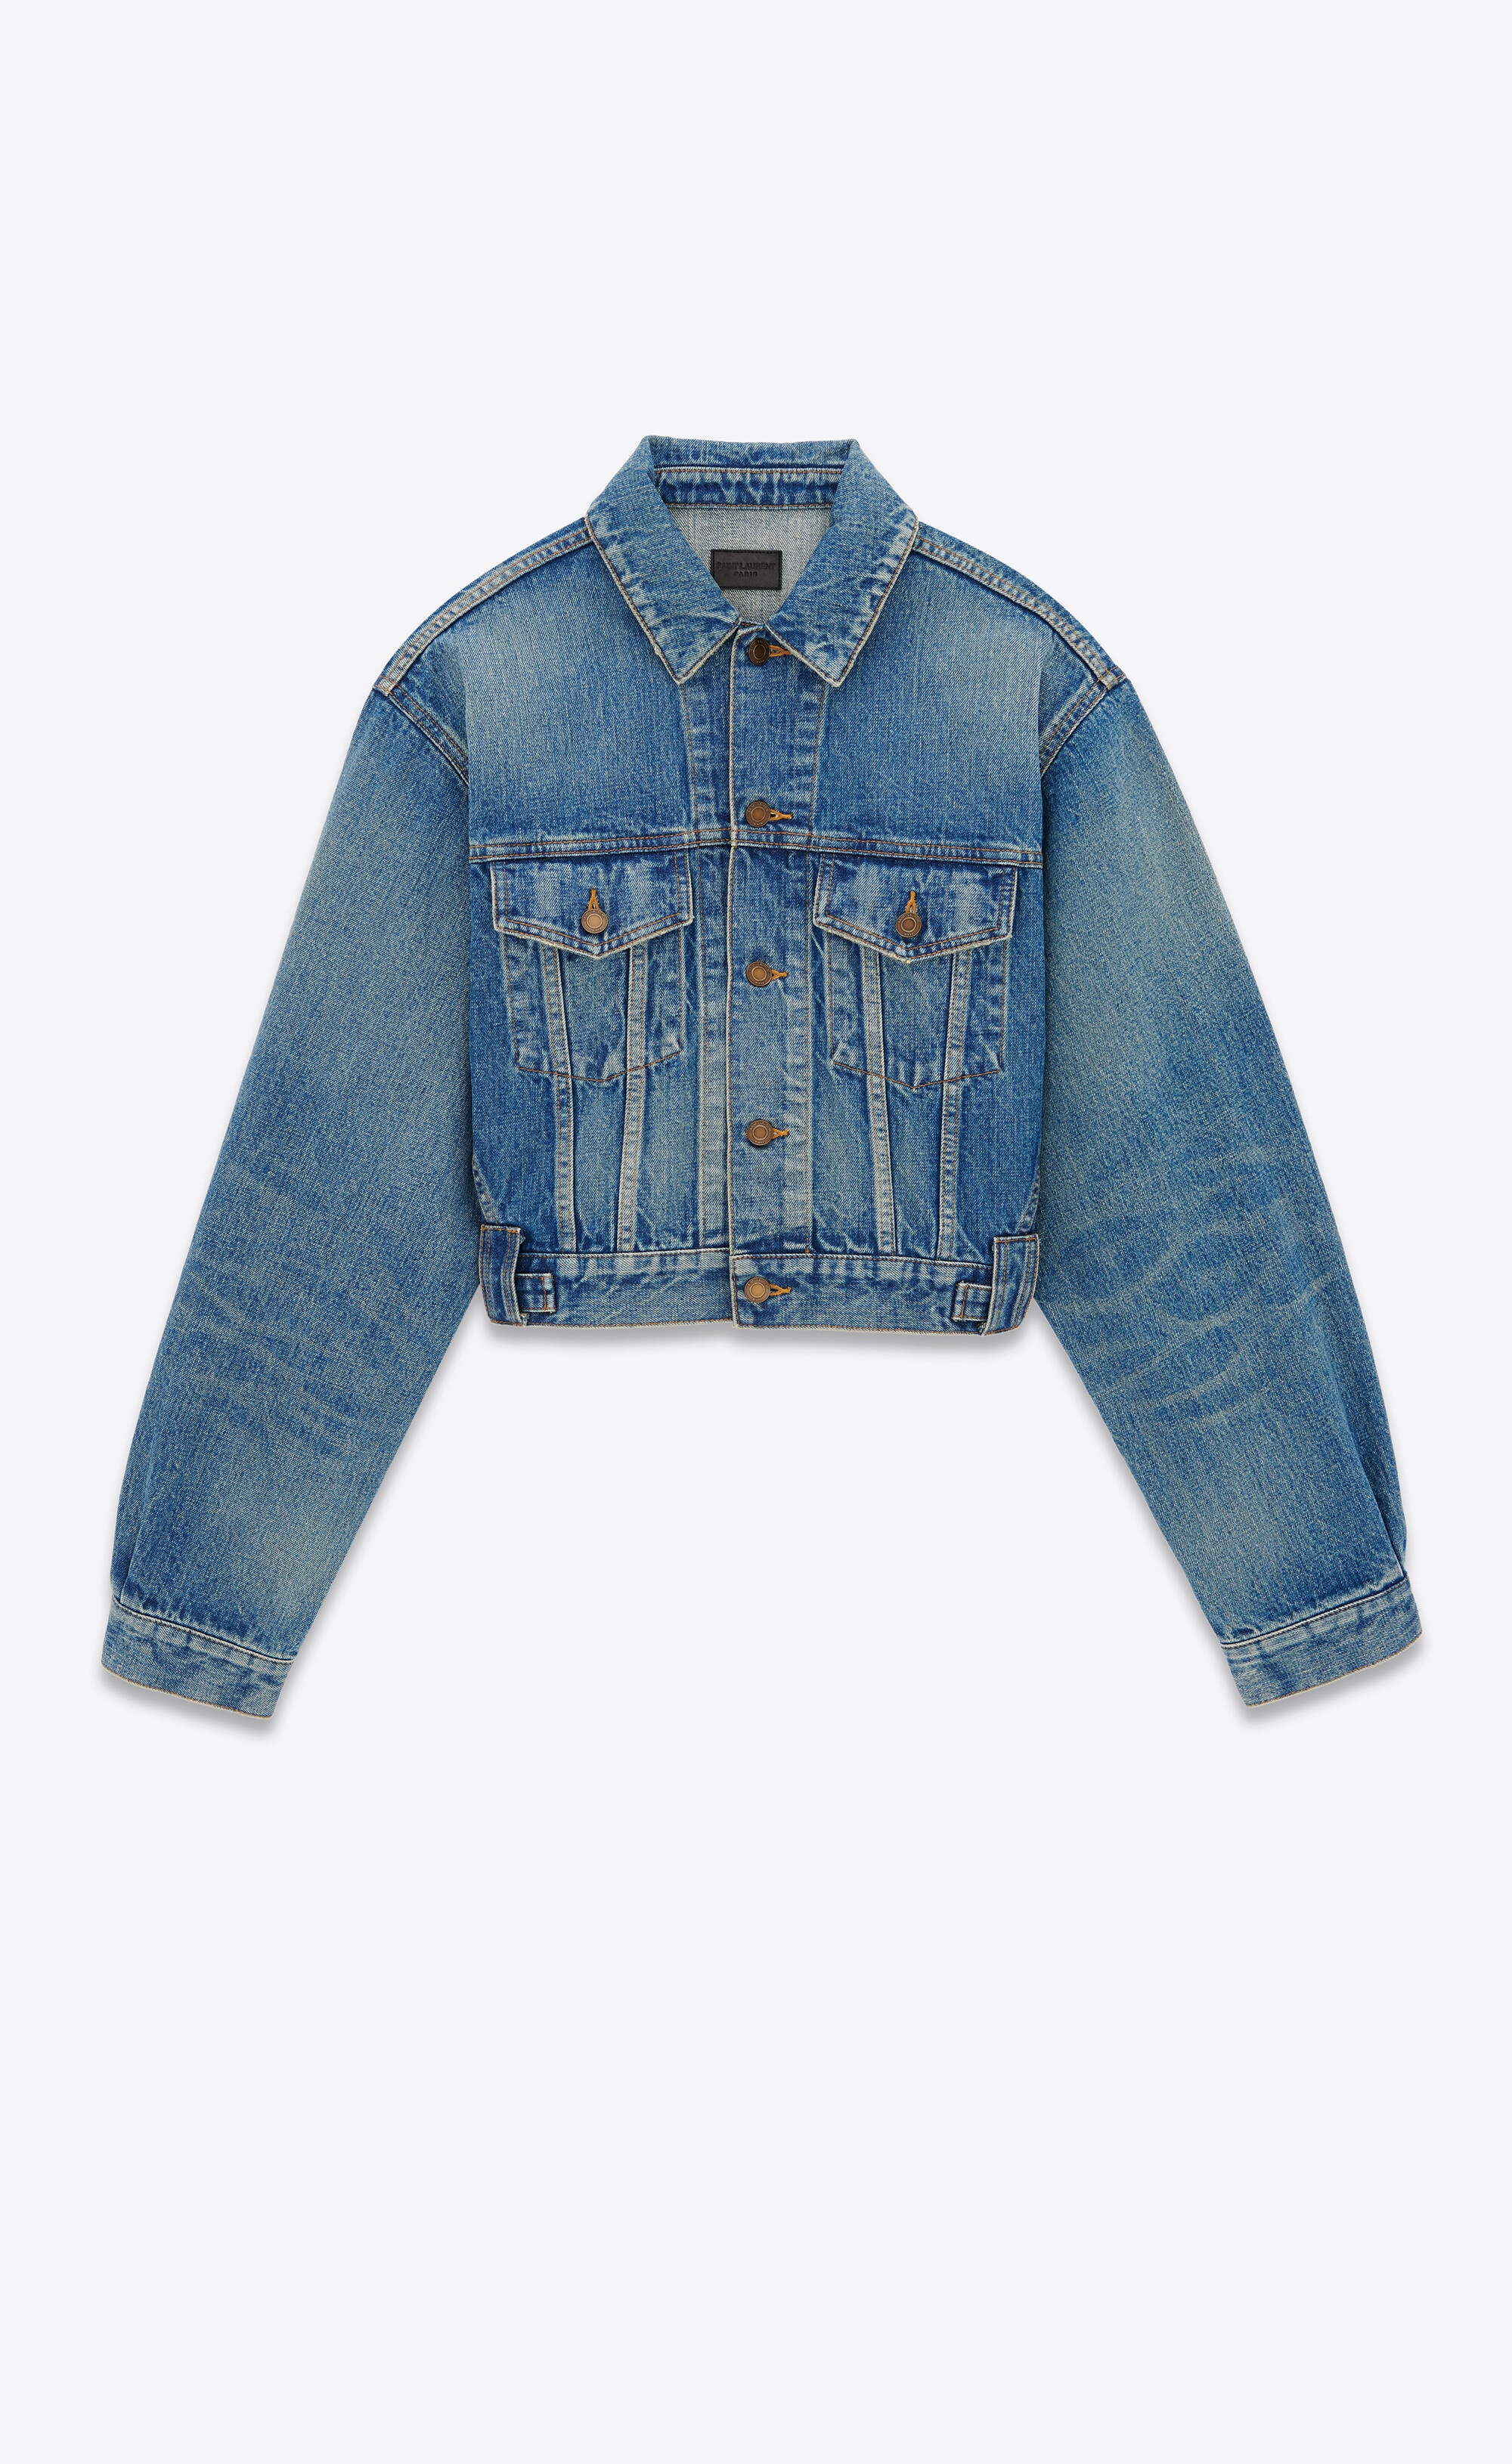 80's jacket in vintage blue denim - 1